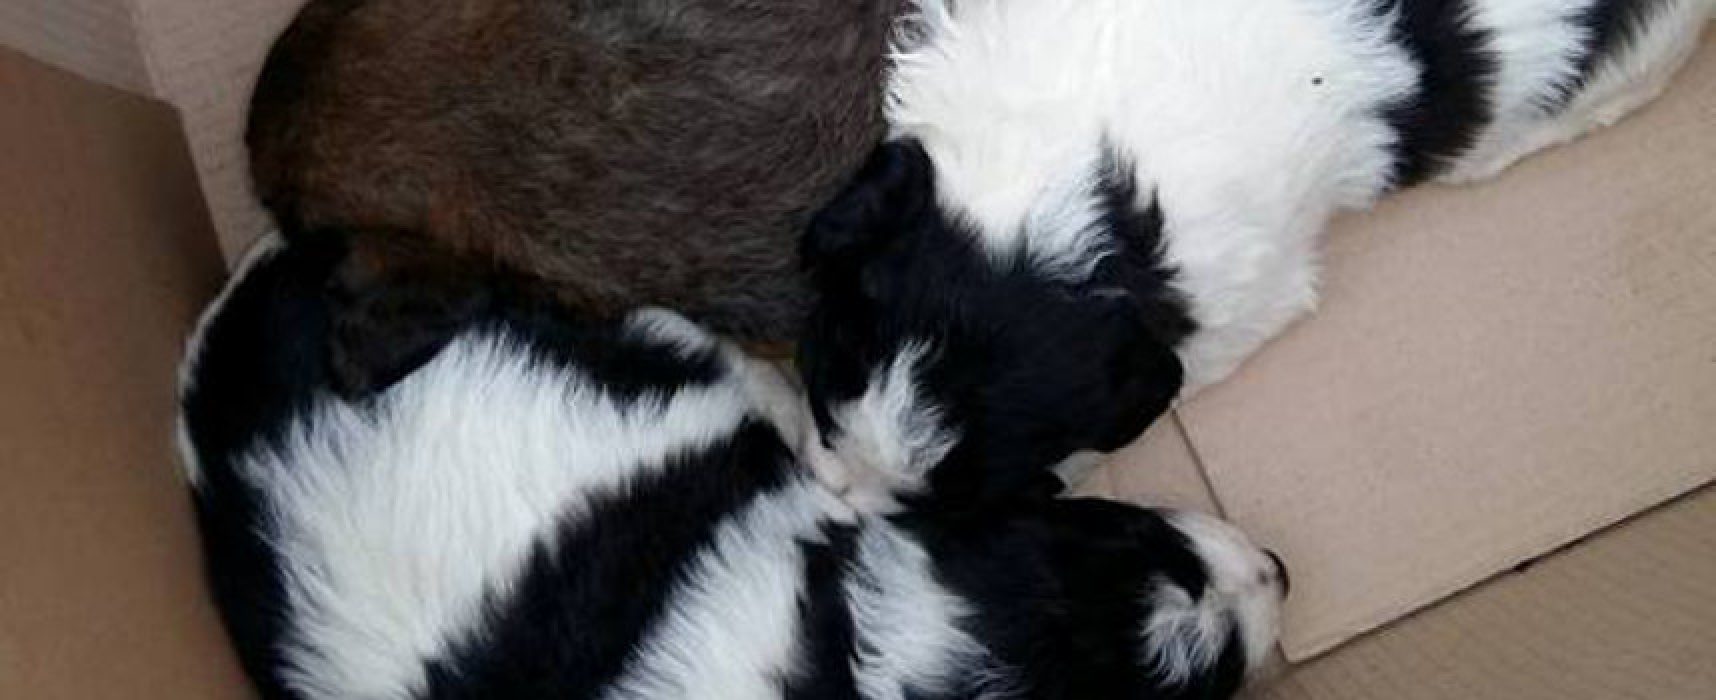 Guardia Ambientale ritrova quattro cuccioli di cane abbandonati, presto in adozione